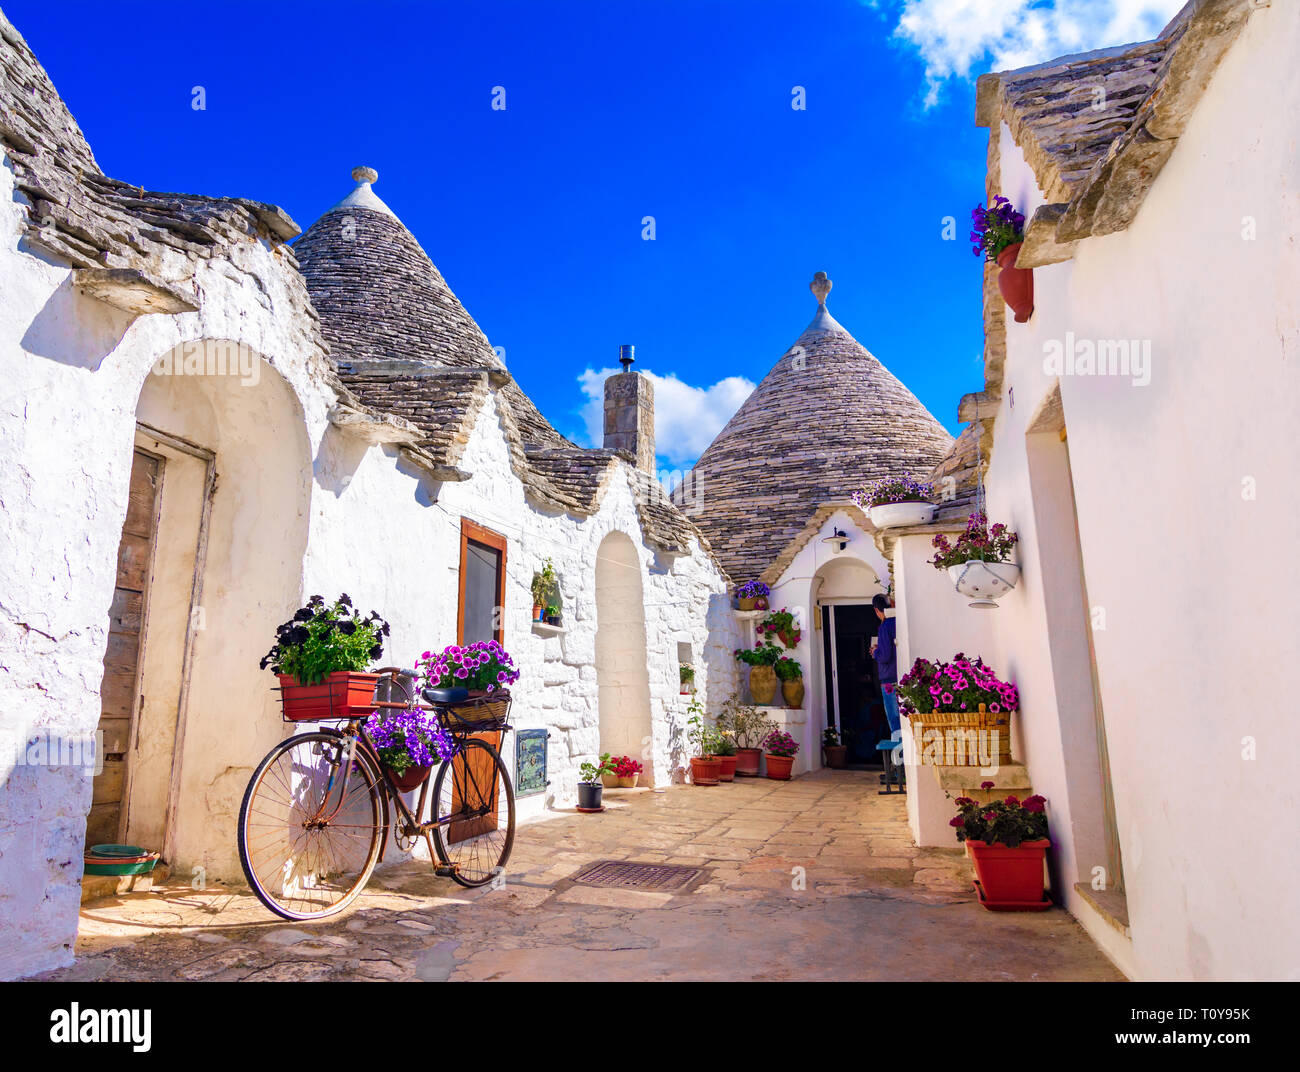 Alberobello, dans les Pouilles, Italie : maisons typiques construites avec des murs en pierre et des toits coniques, dans un beau jour, Pouilles Banque D'Images